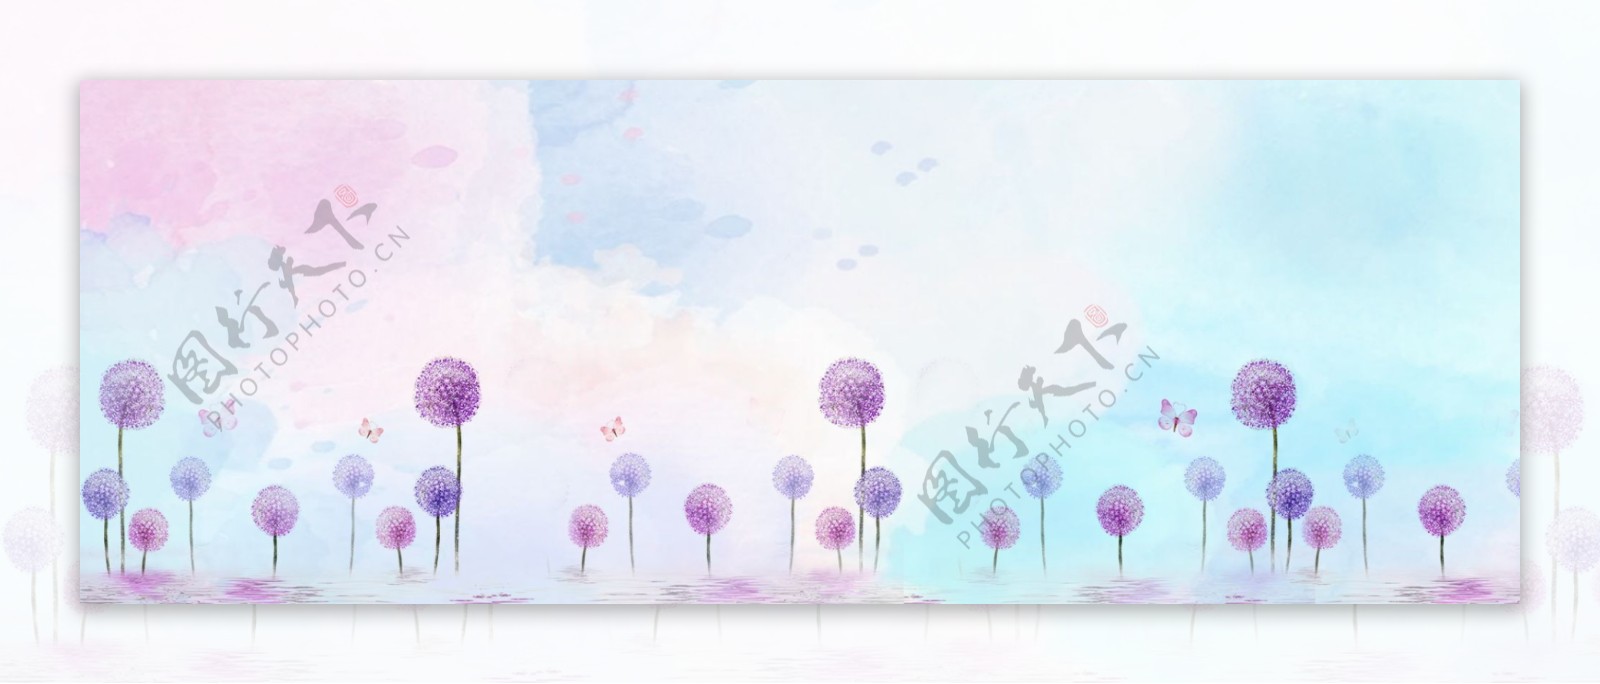 清新渲染紫色蒲公英花卉背景